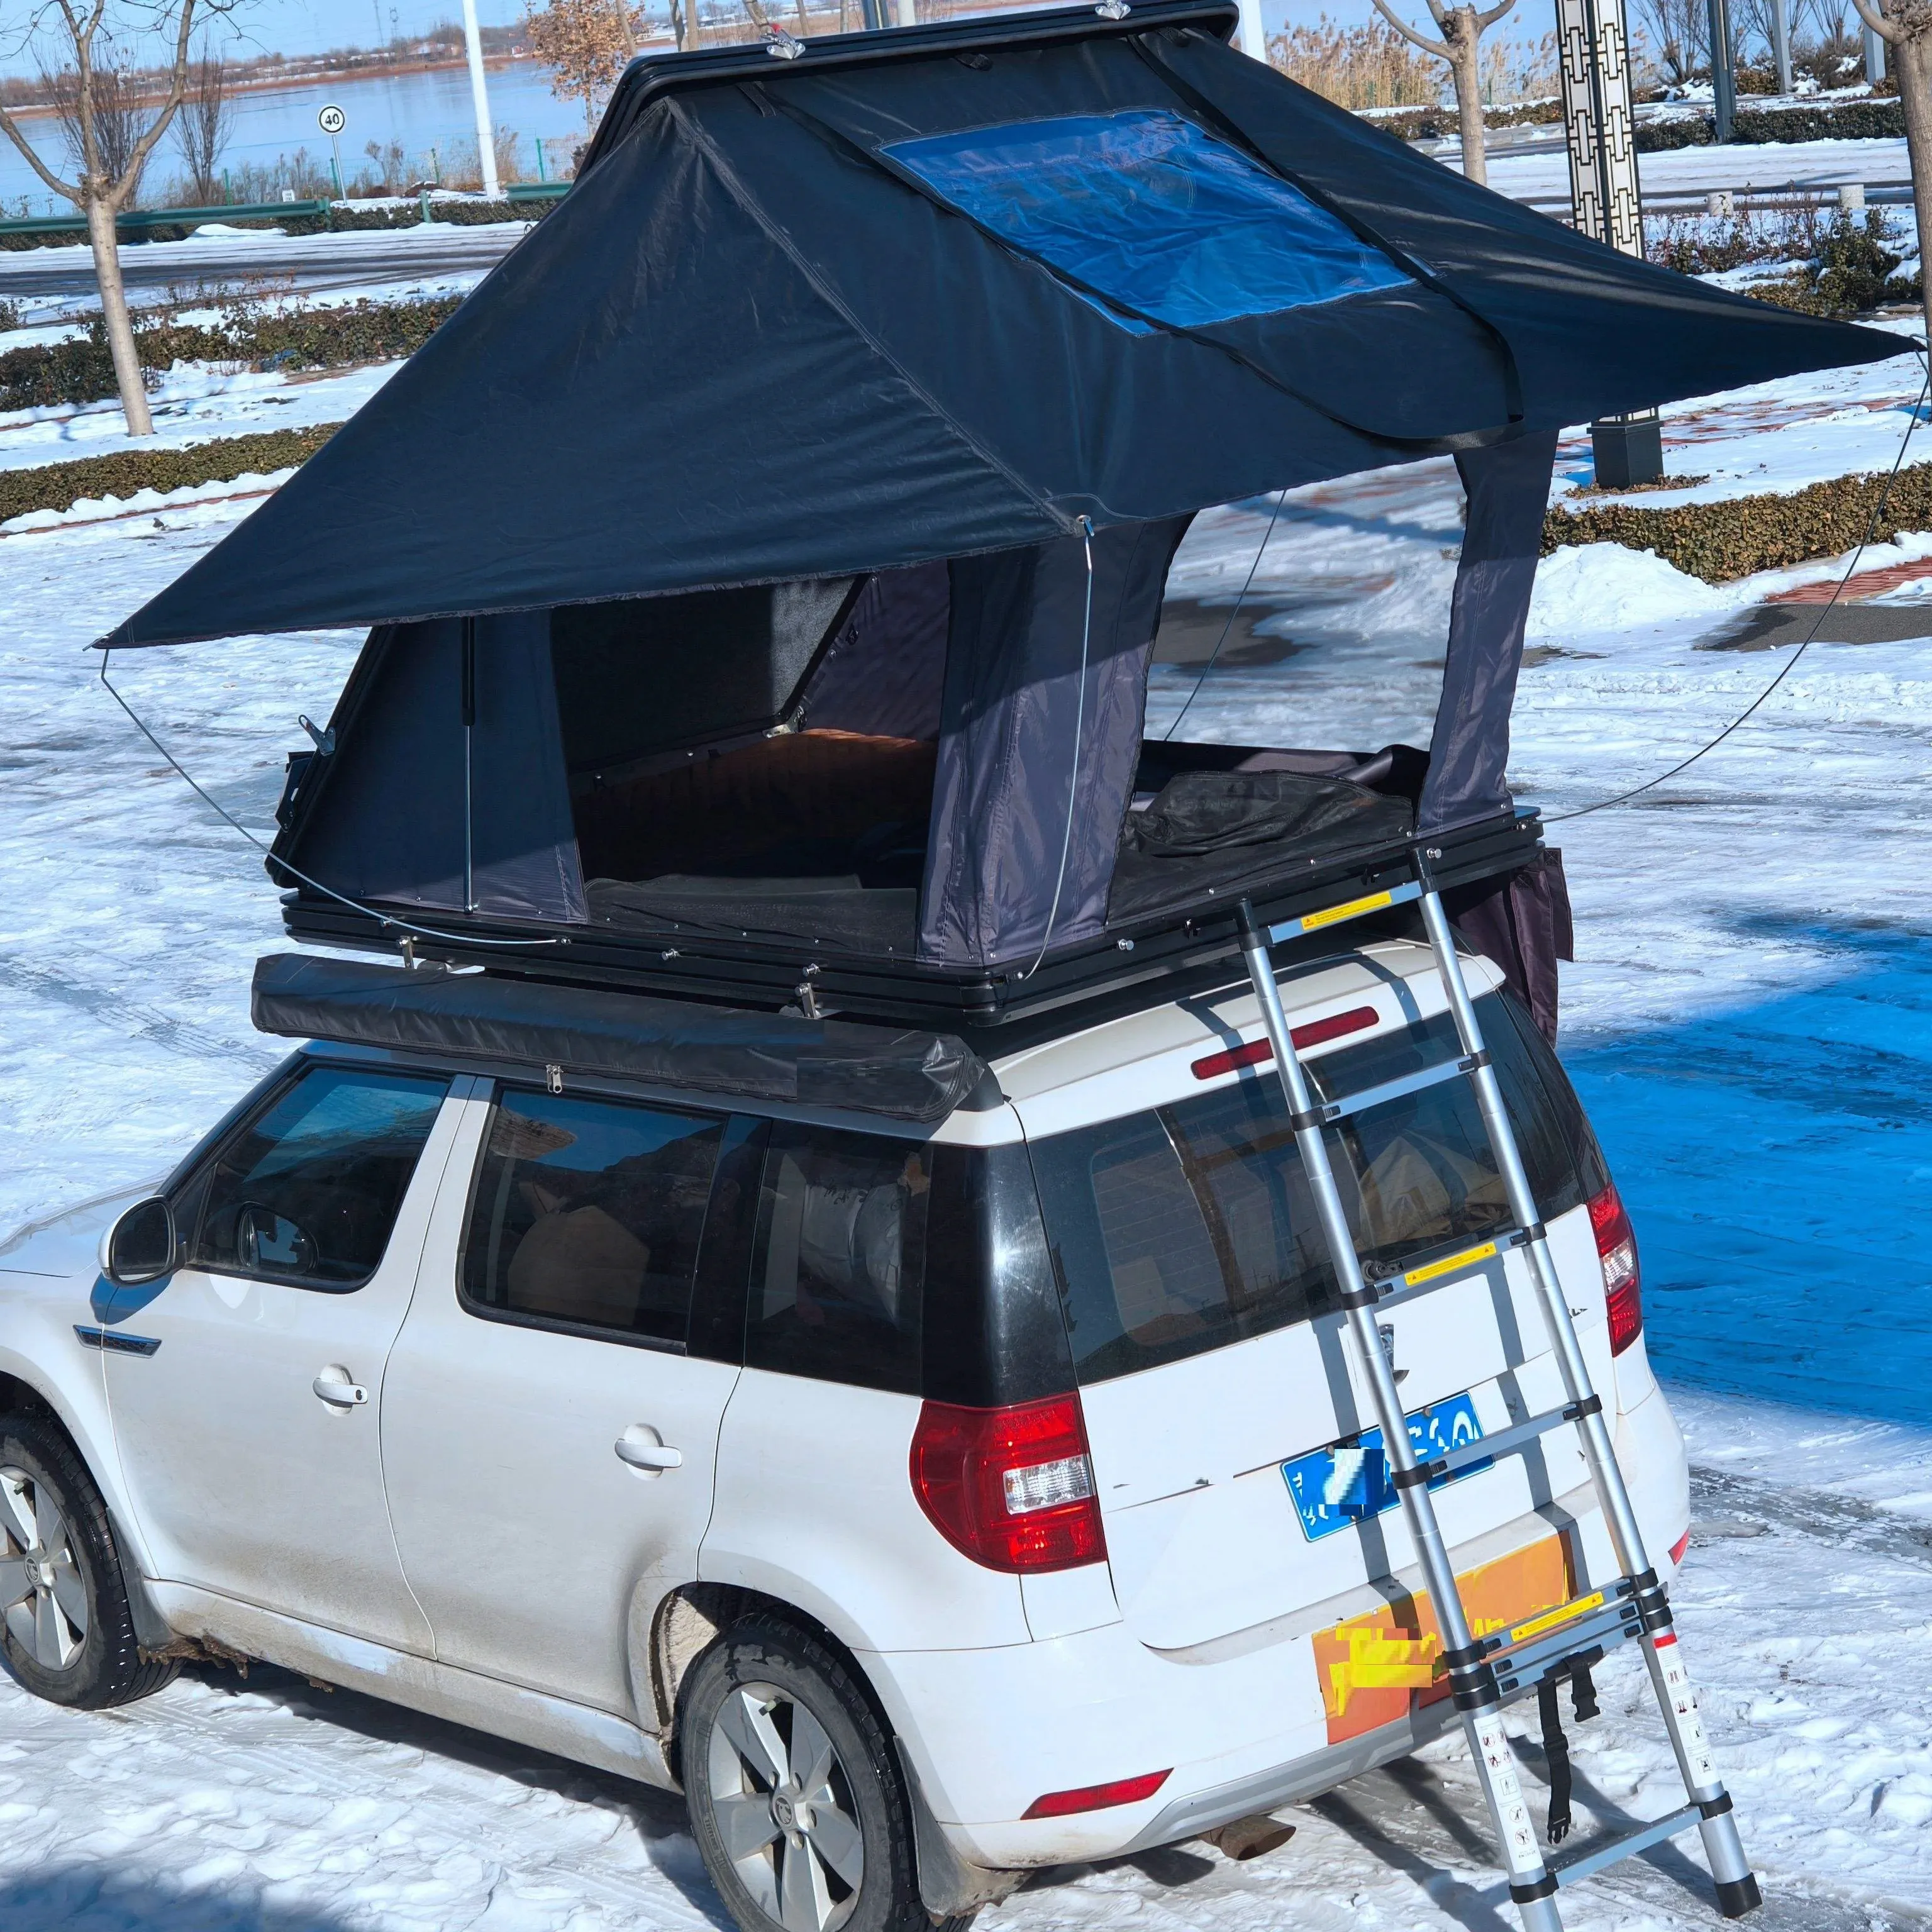 خيمة فوق سقف السيارة مقاومة للماء مثلثة مفتوحة للتخييم في الهواء الطلق خيمة فوق سقف السيارة للتخييم